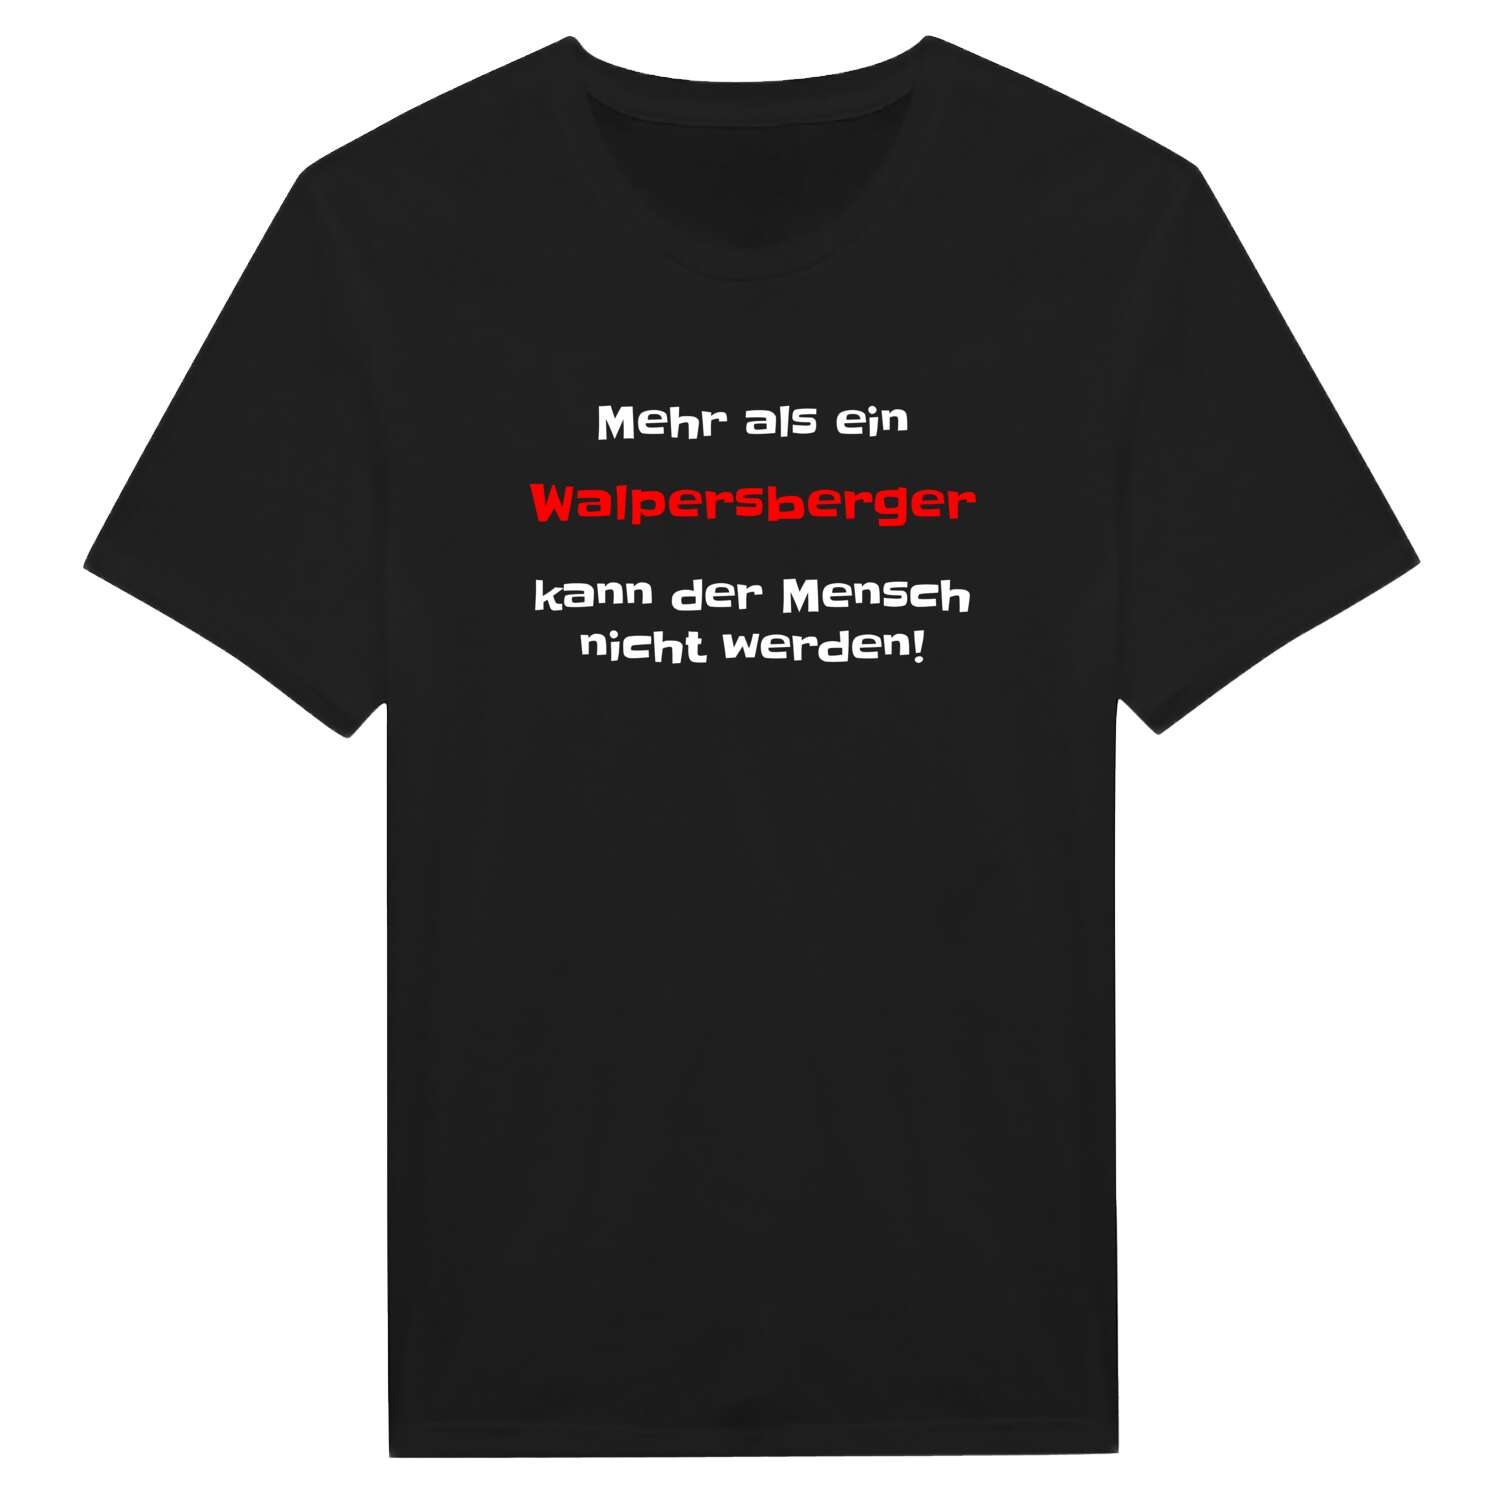 Walpersberg T-Shirt »Mehr als ein«